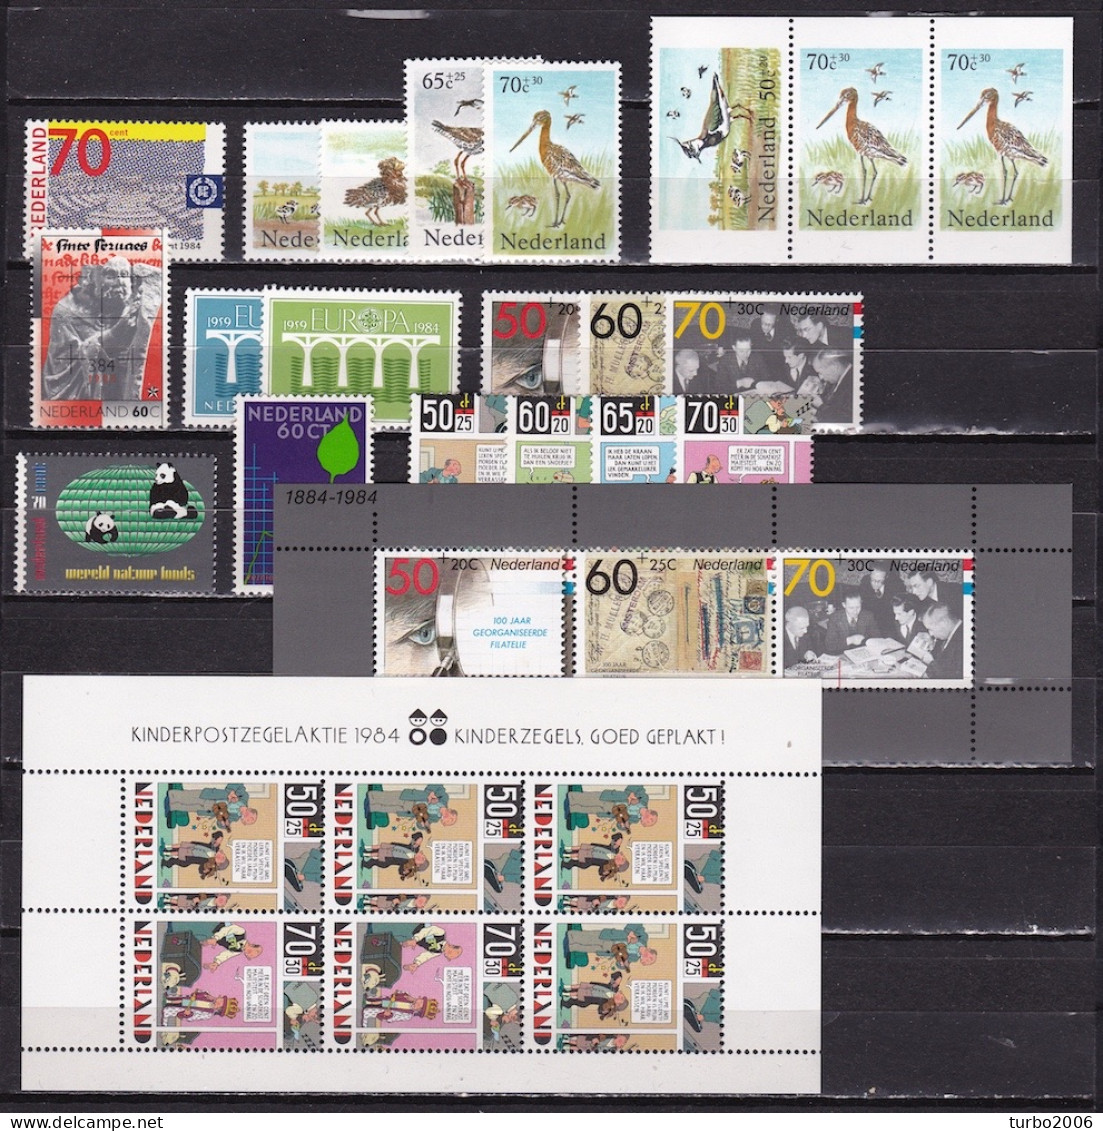 Nederland : 1984 Bijna Complete Postfrisse Jaargang NVPH  1300 / 1311 - 1313 /1320 - Années Complètes